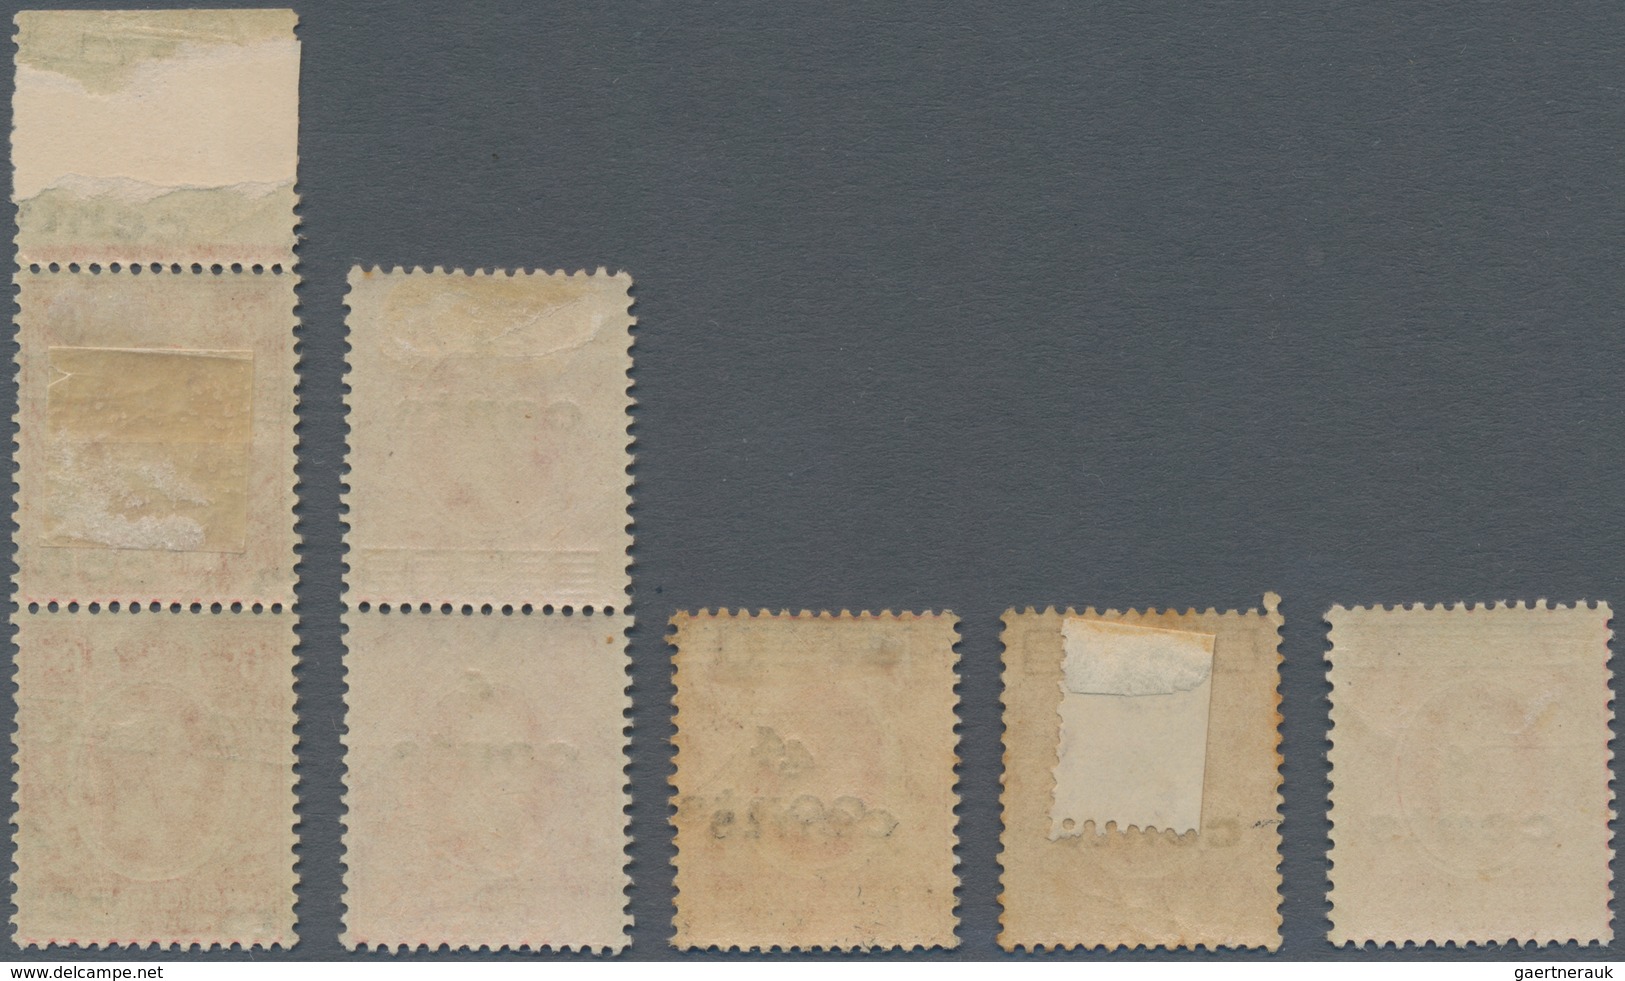 Britisch-Ostafrika Und Uganda: 1921 4c. On 6c. Scarlet, Seven Stamps (incl. Two Pairs), With Mint An - Herrschaften Von Ostafrika Und Uganda